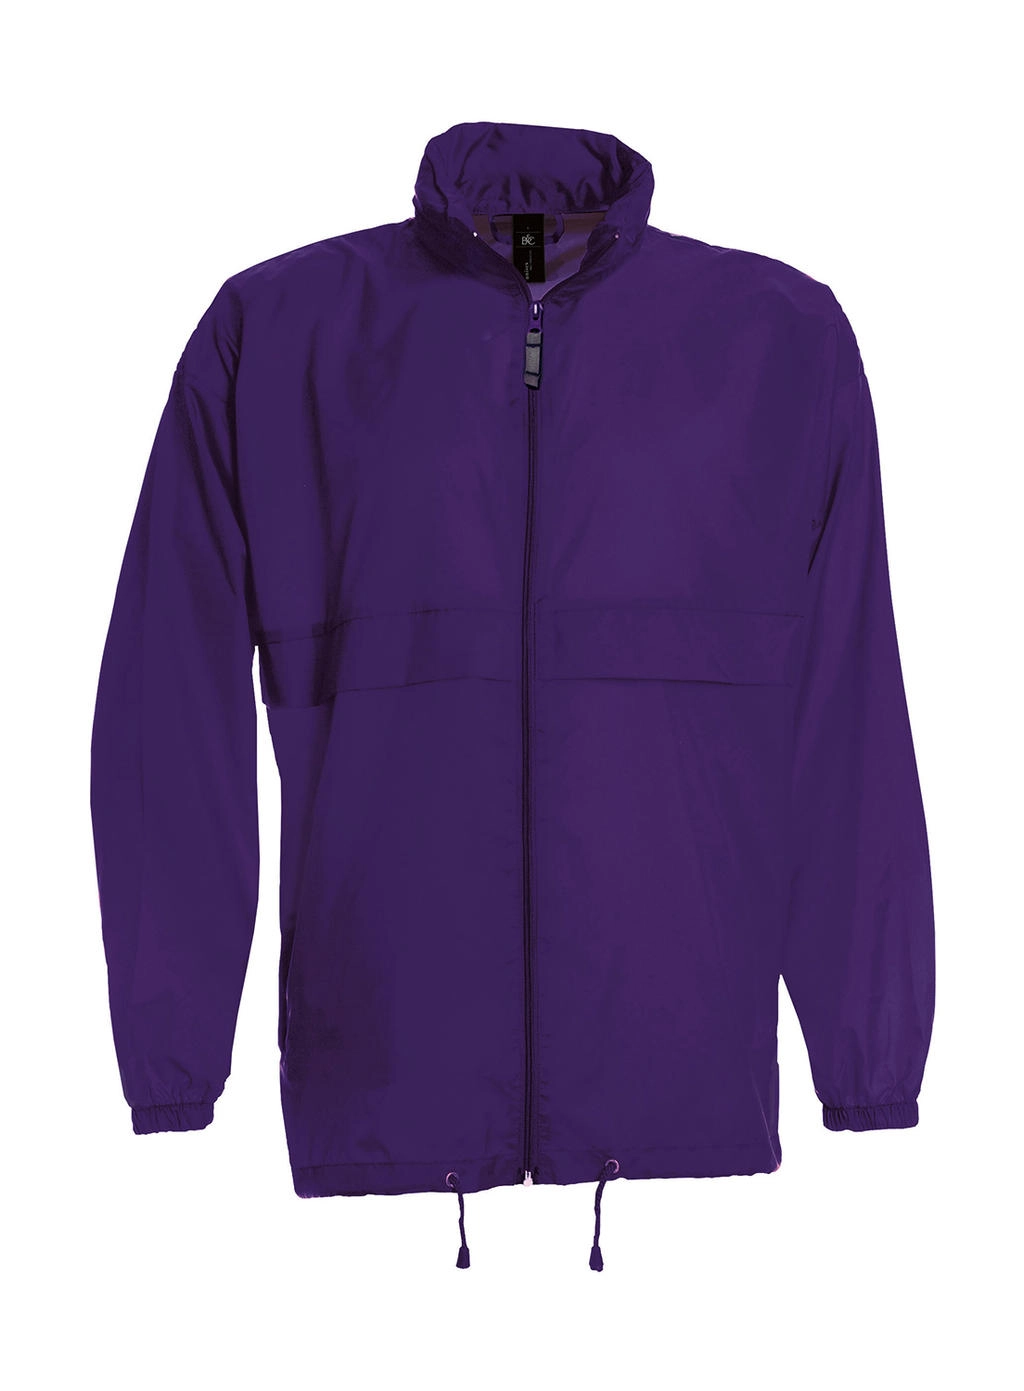 Sirocco Windbreaker zum Besticken und Bedrucken in der Farbe Purple mit Ihren Logo, Schriftzug oder Motiv.